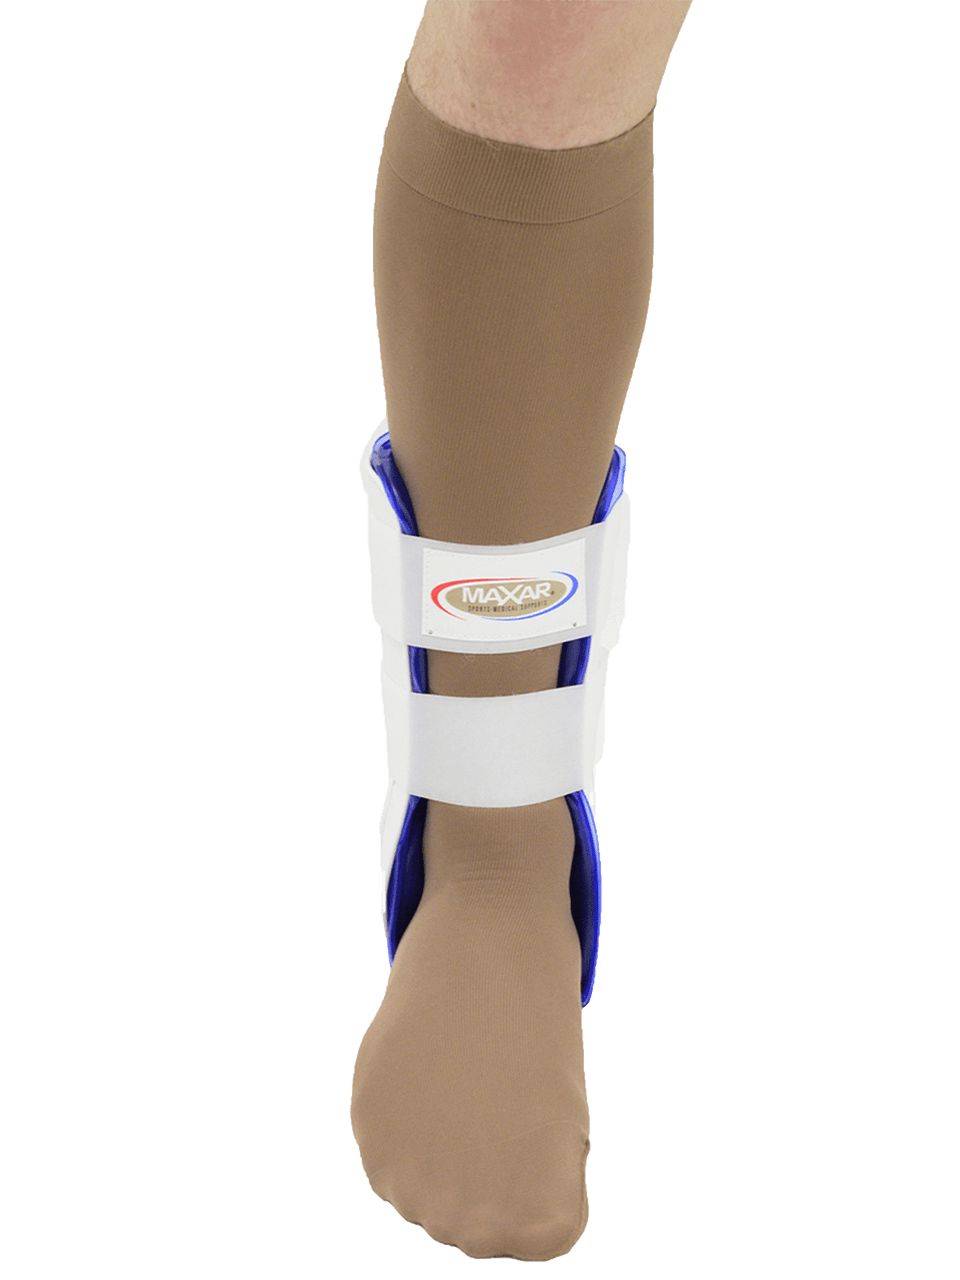 MAXAR Gel/Air Ankle Guard - White